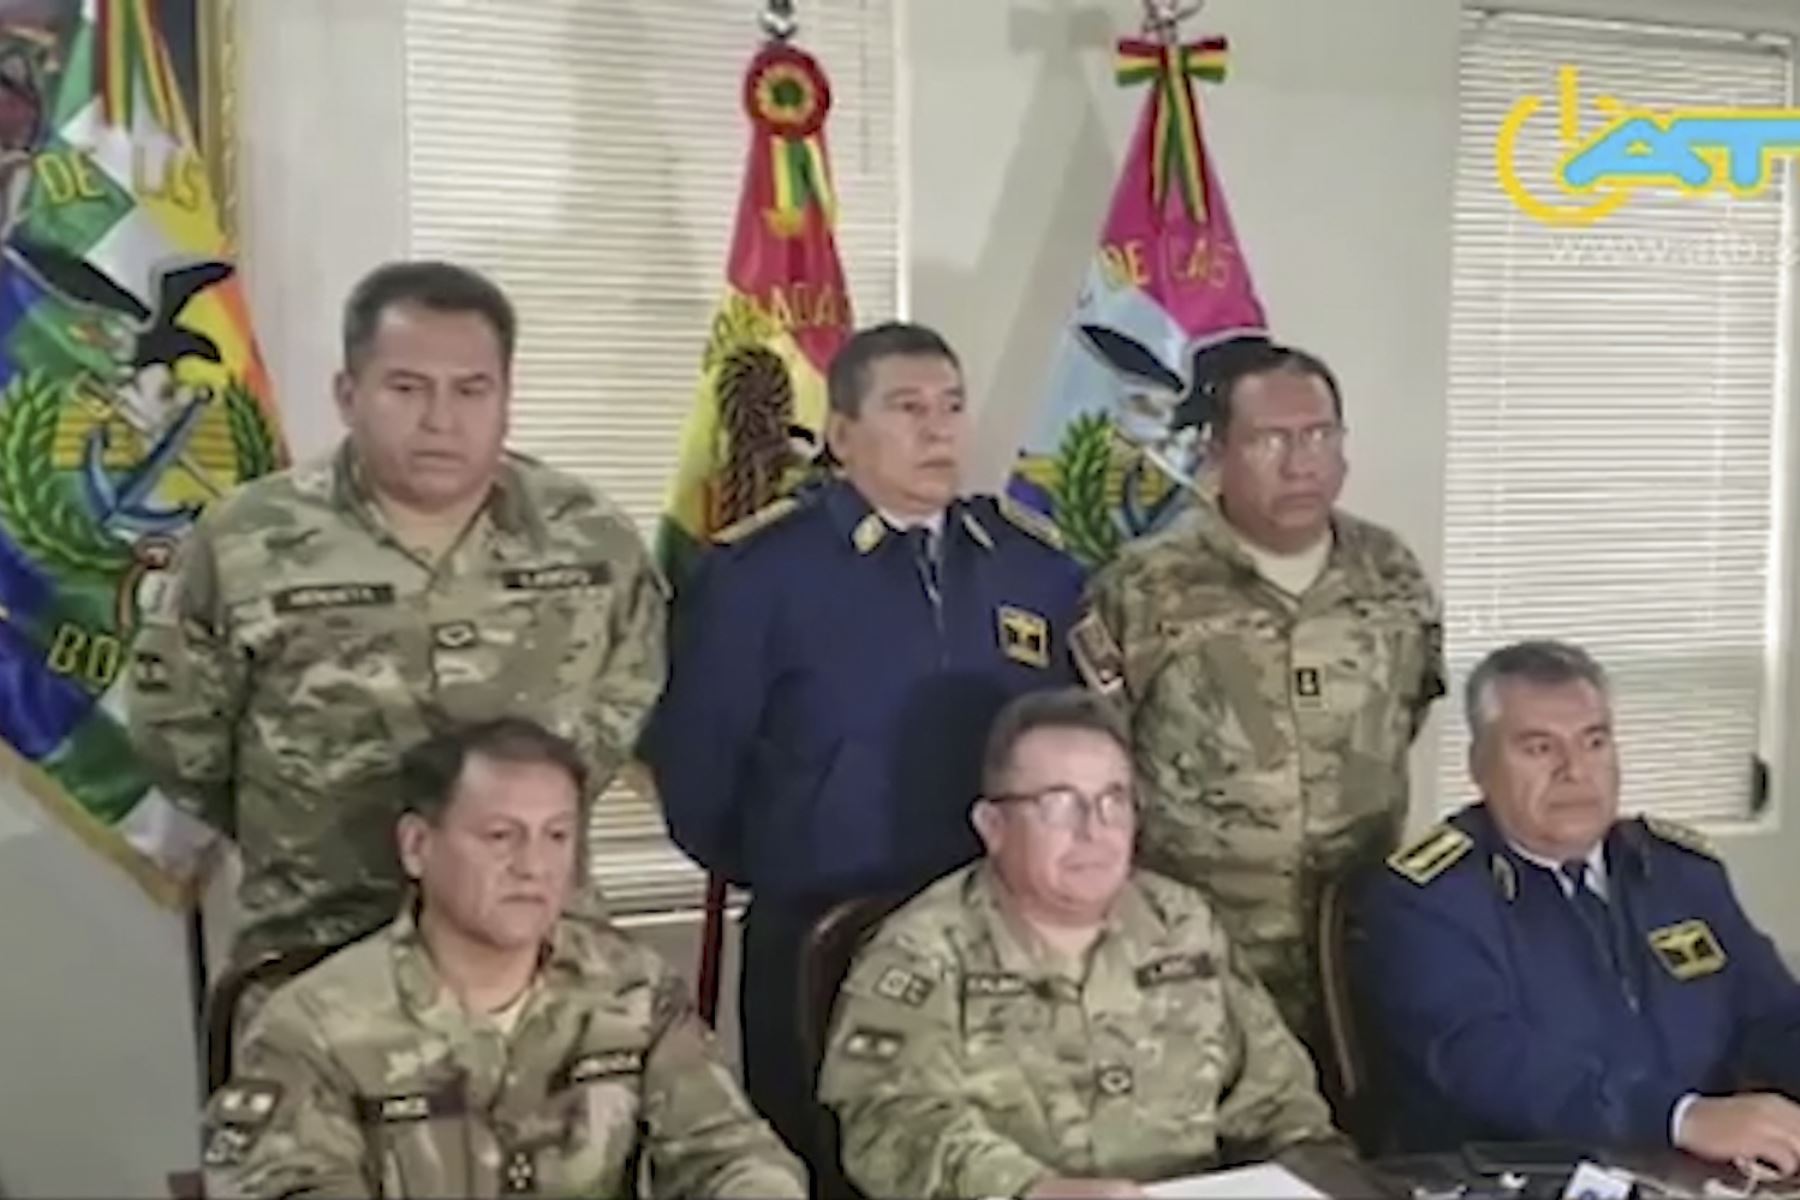 10 de noviembre de 2019,el comandante en jefe de las Fuerzas Armadas, Williams Kaliman, pidió la renuncia del presidente Evo Morales durante una conferencia de prensa. Foto: AFP